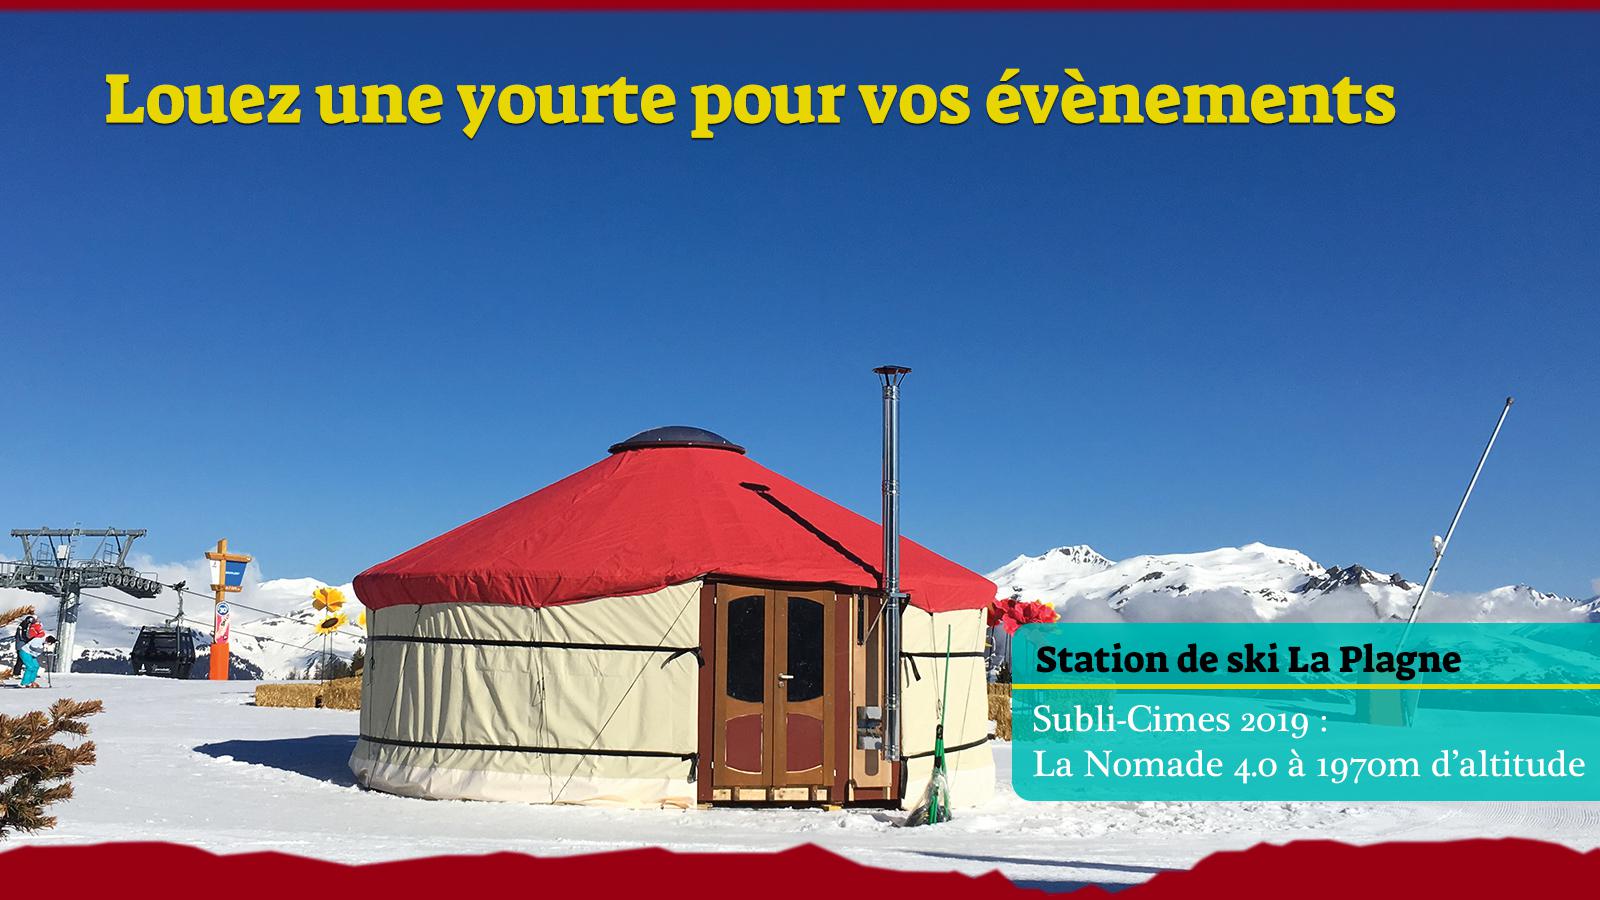 Yourte La Nomade 4.0 en station de ski